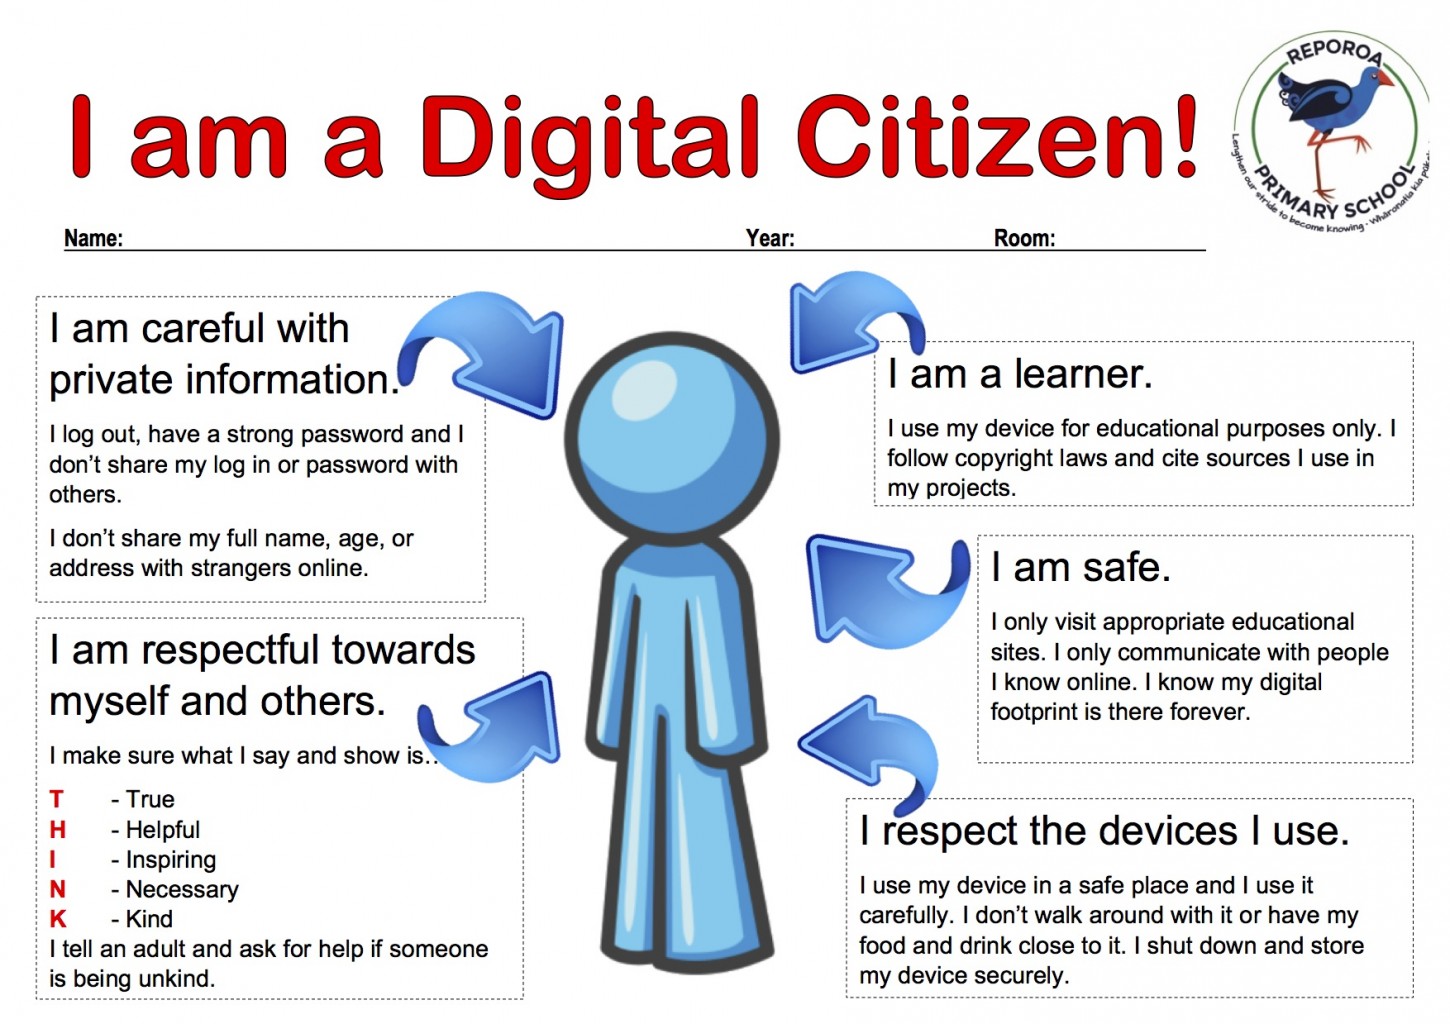 Digital Citizen